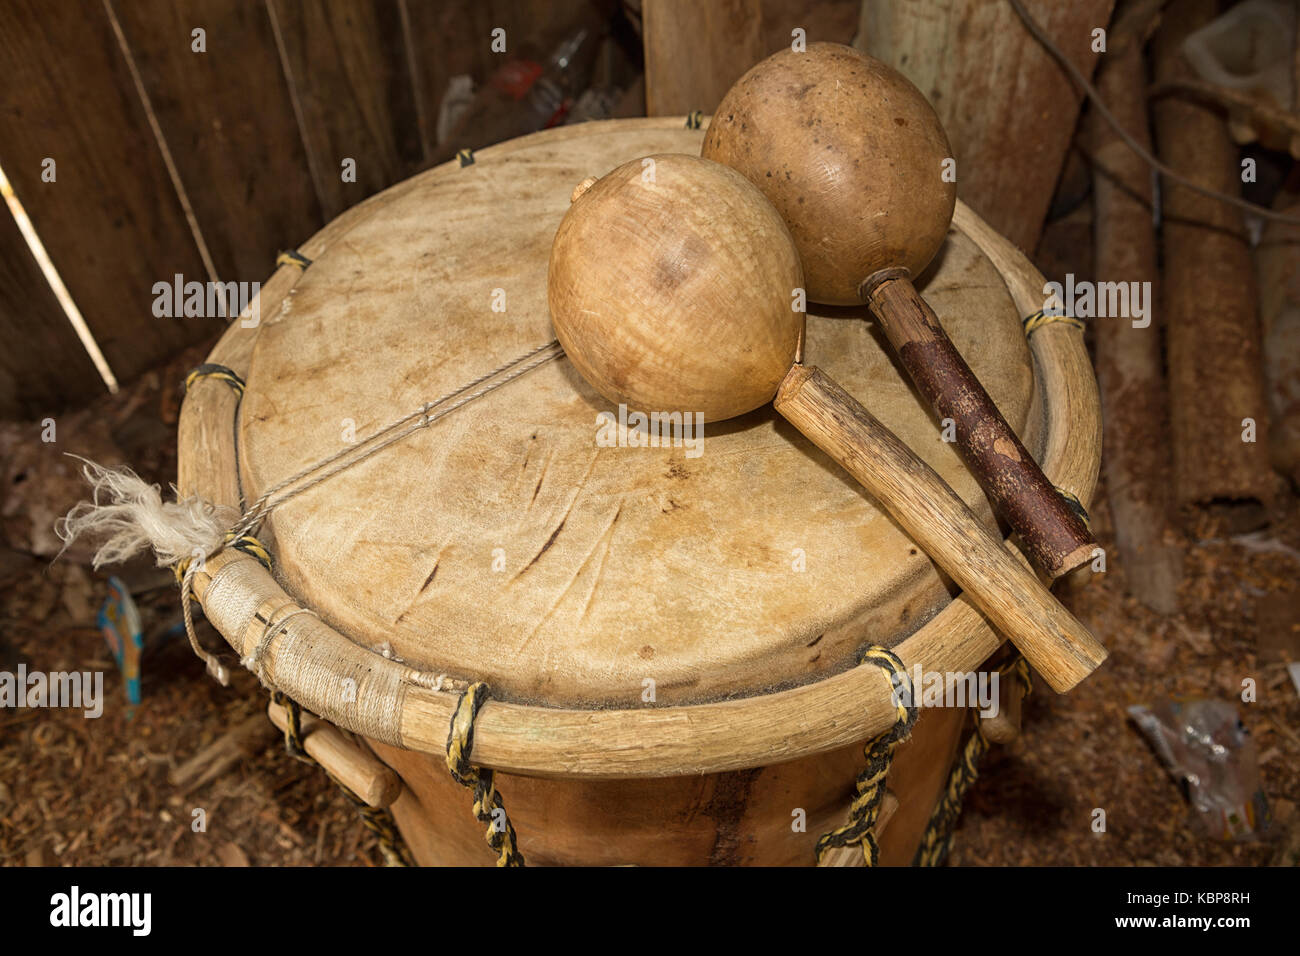 garifuna drum and maraca in Honduras Stock Photo